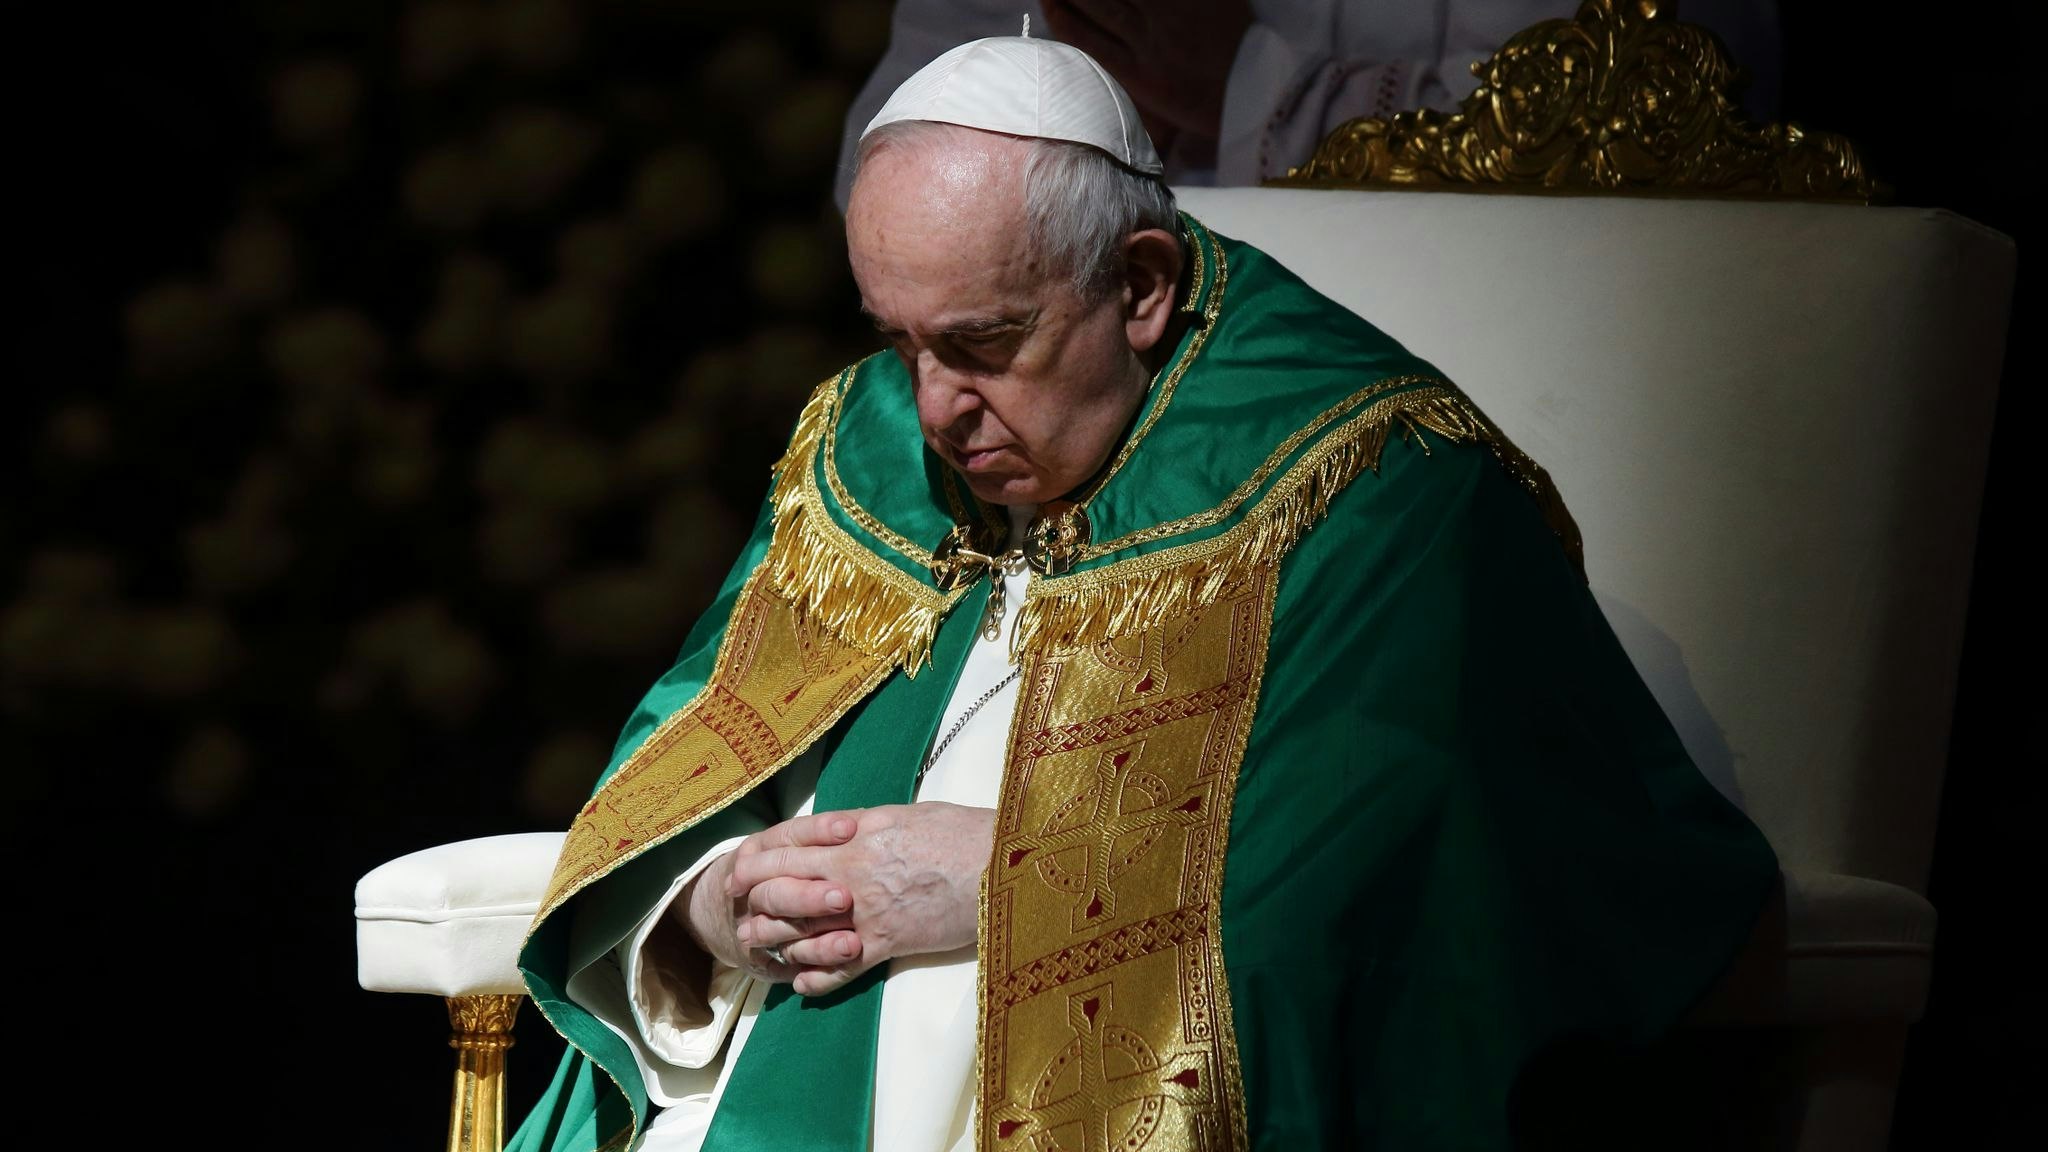 Papst Franziskus ist und die katholische Kirche in Deutschland haben ein angespanntes Verhältnis. Foto: dpa/Inetti